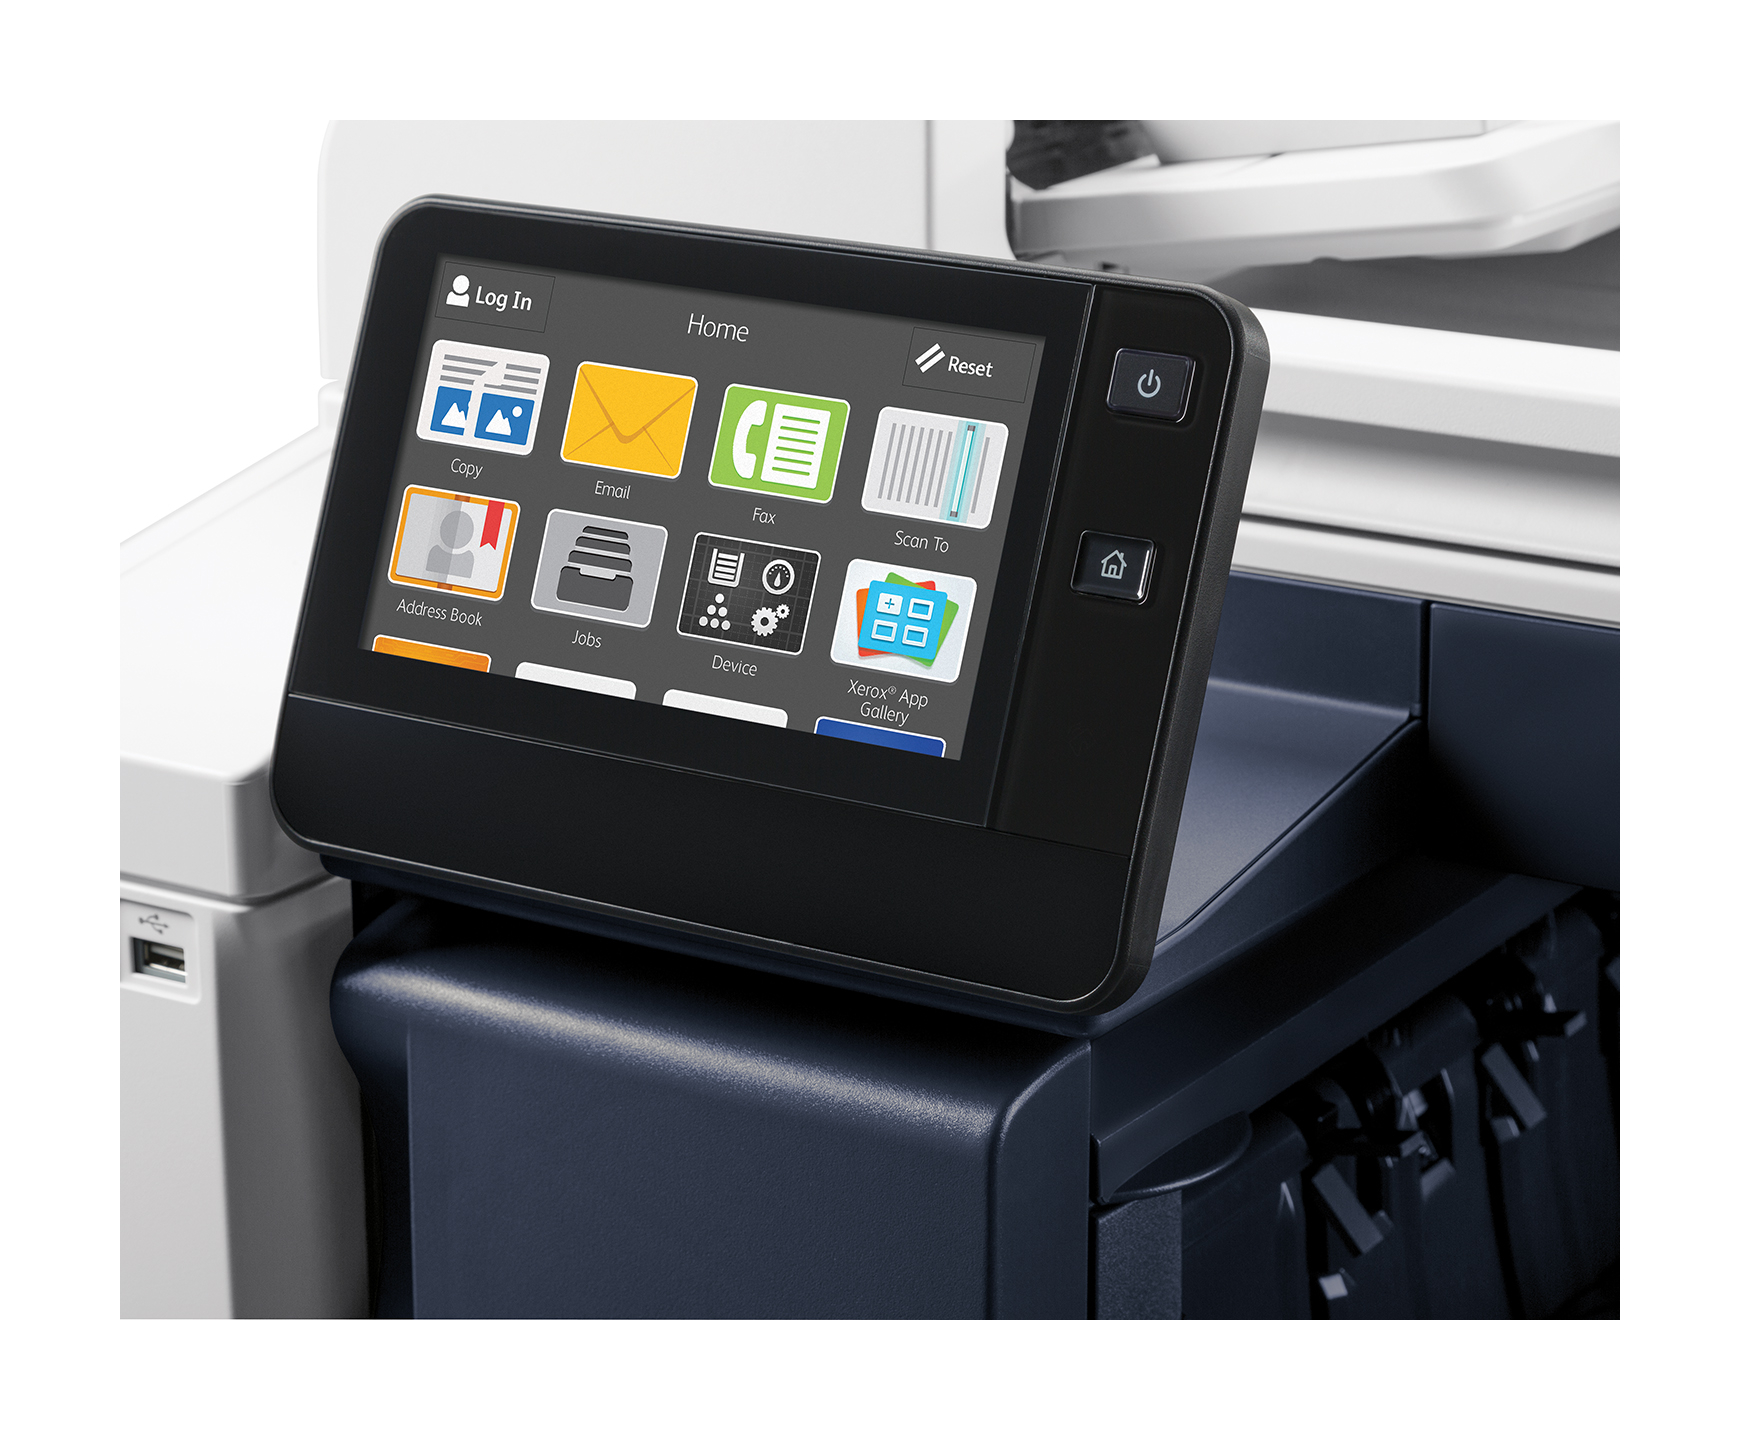 versalink c7020 multifunction printer user interface